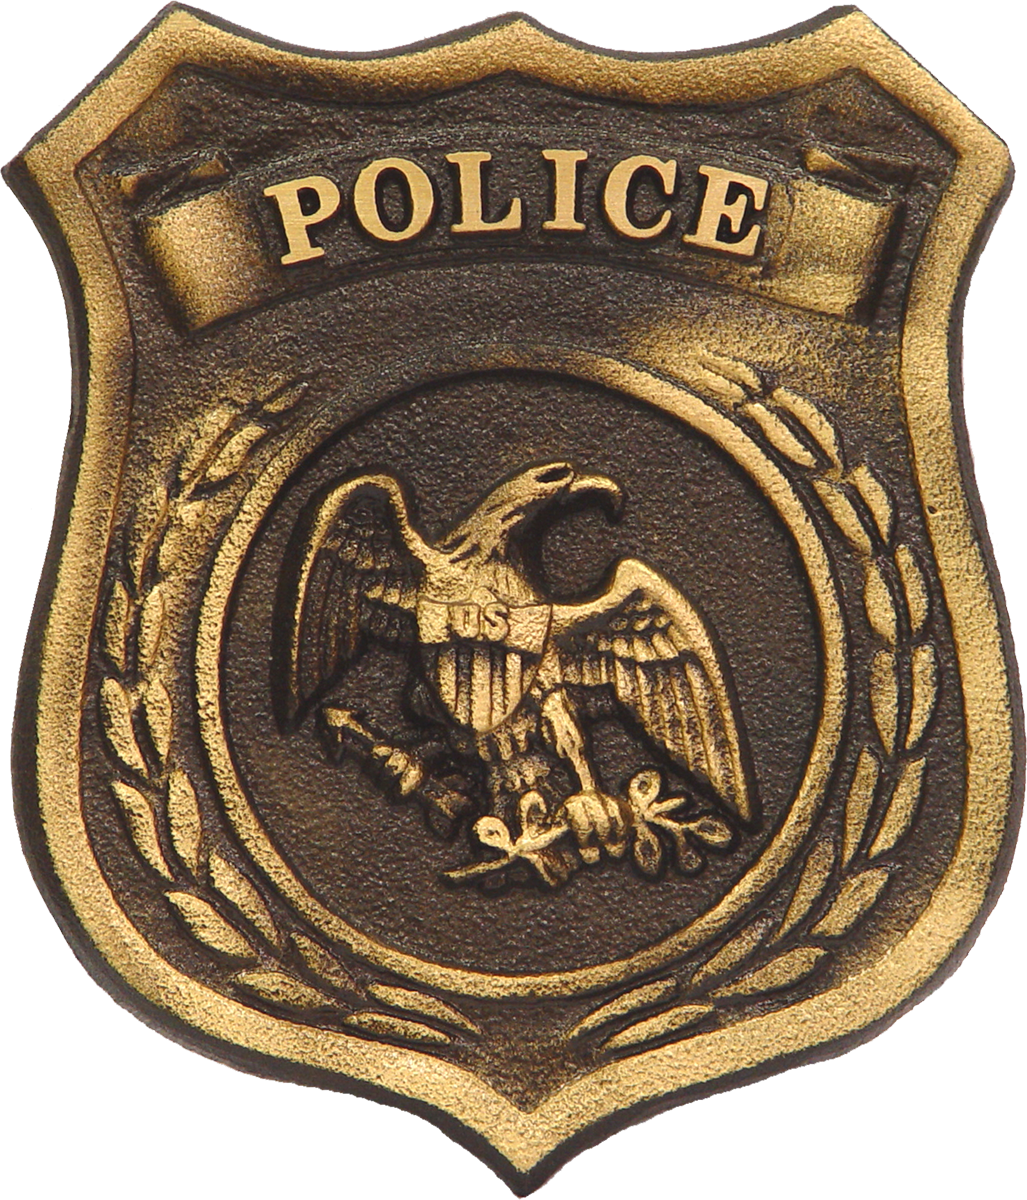 Odznaka policyjna